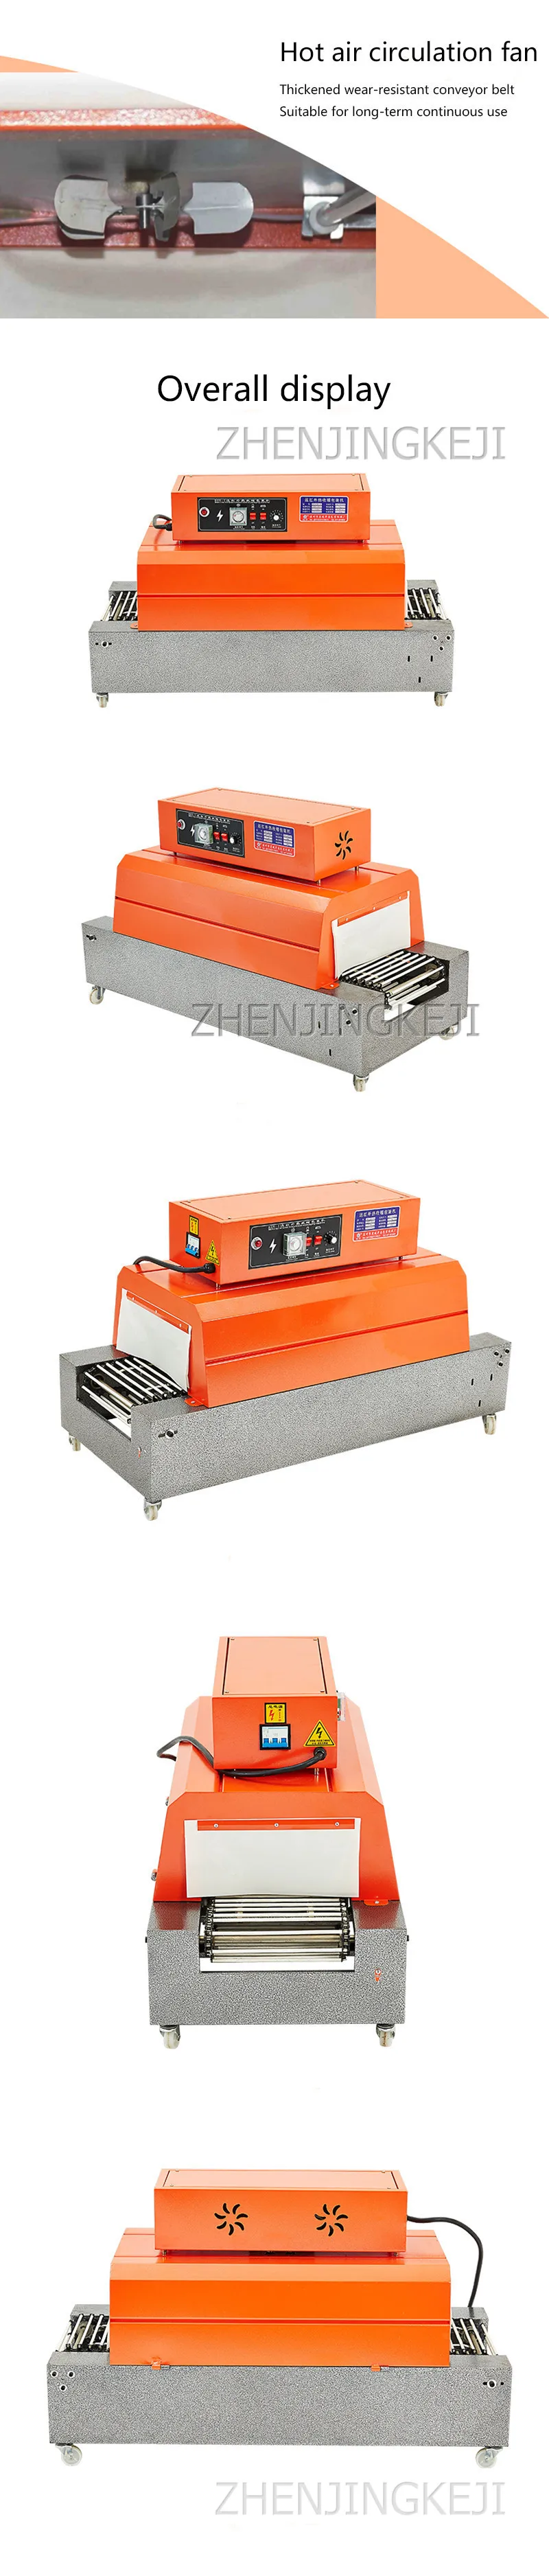 Fully Automatic Baler Heat Shrinking Machine Chain Heat Shrinking Machine Constant Packing Machine Laminator Plastic PackageTool